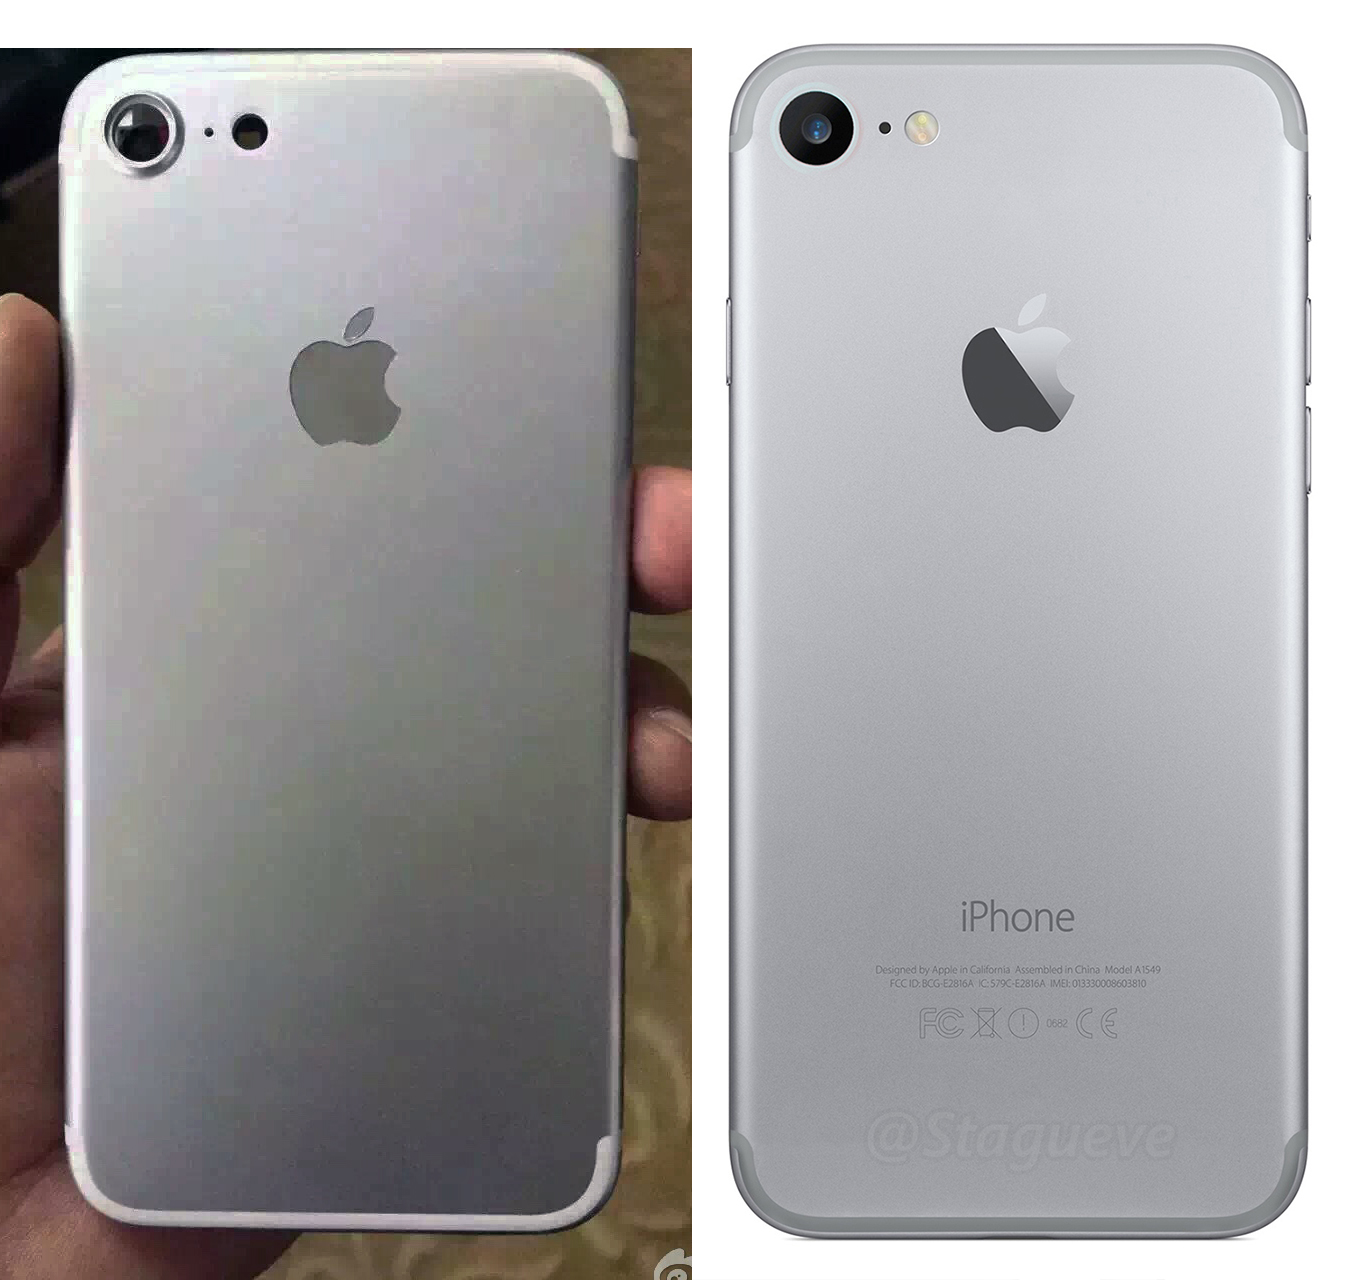 iPhone-7-Leak-vs-iPhone-7-Render.jpg